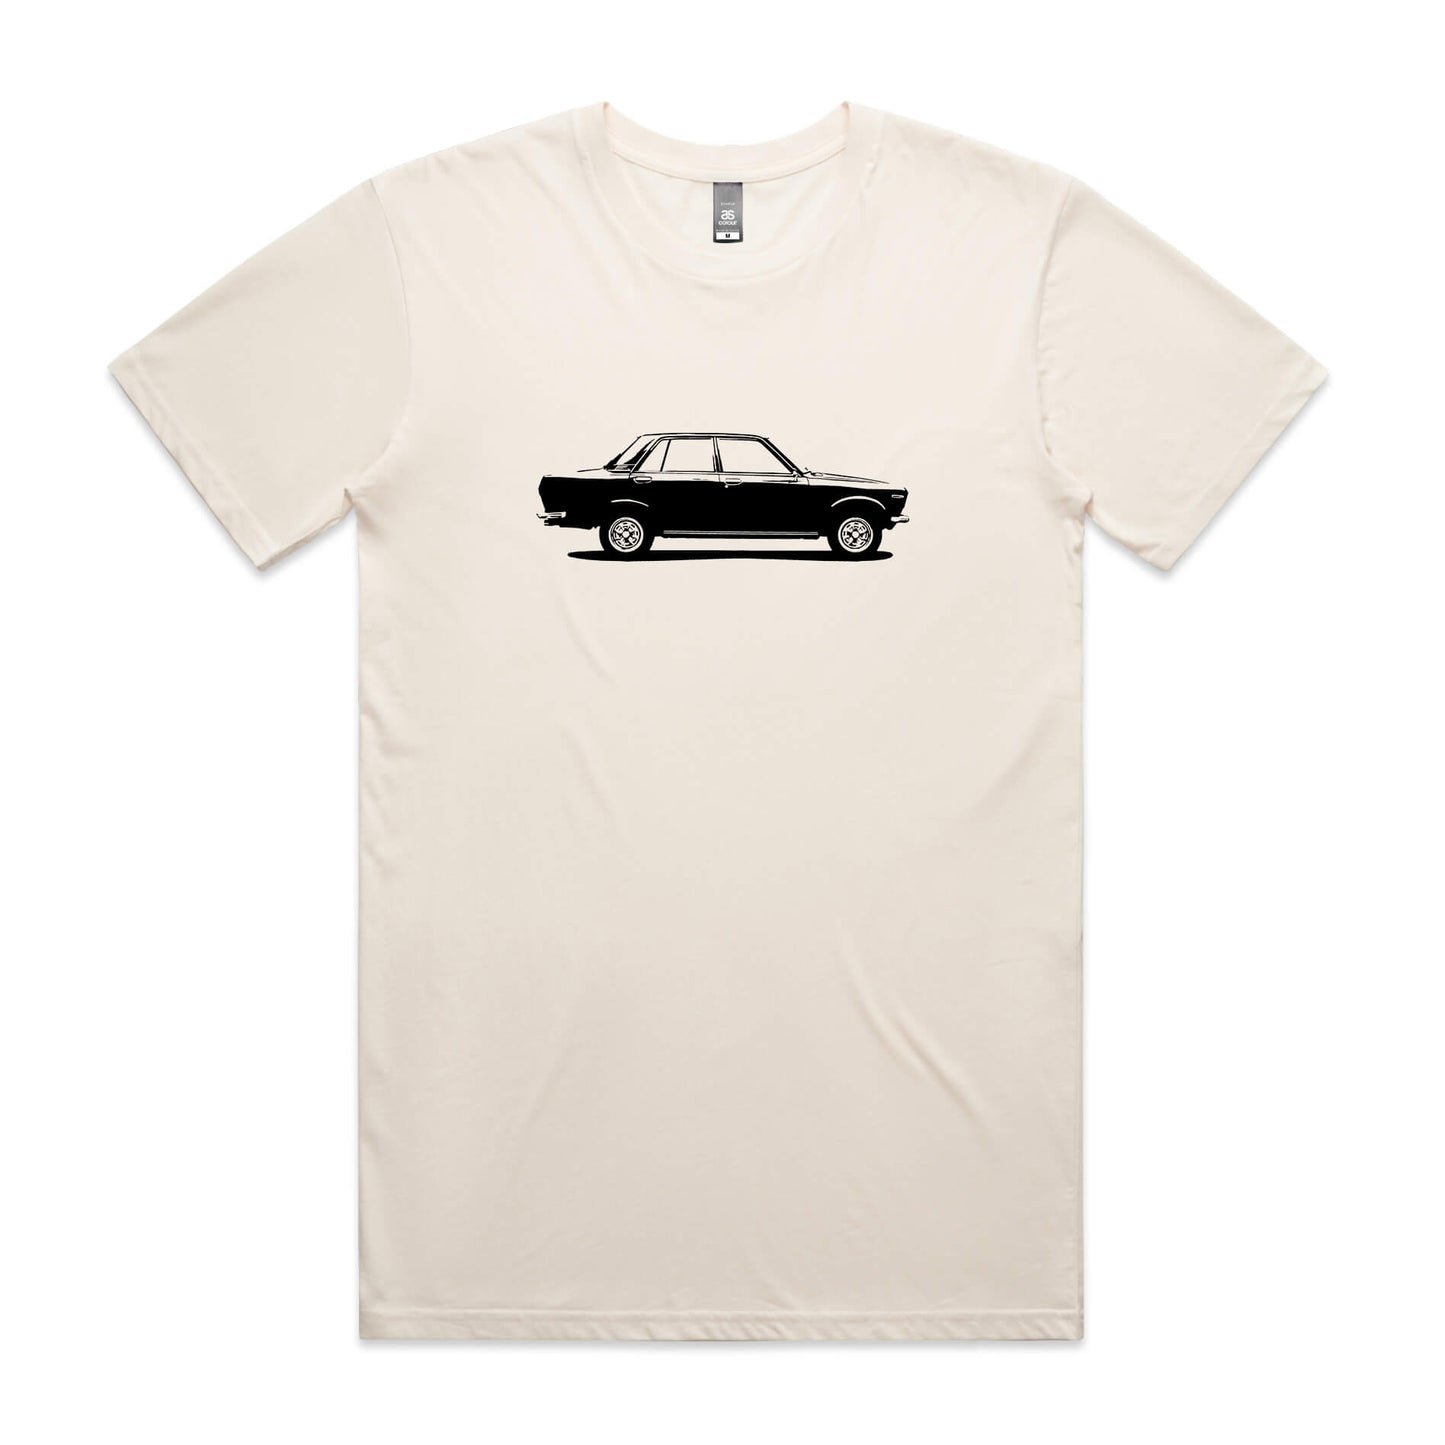 Datsun 1600 t-shirt in beige